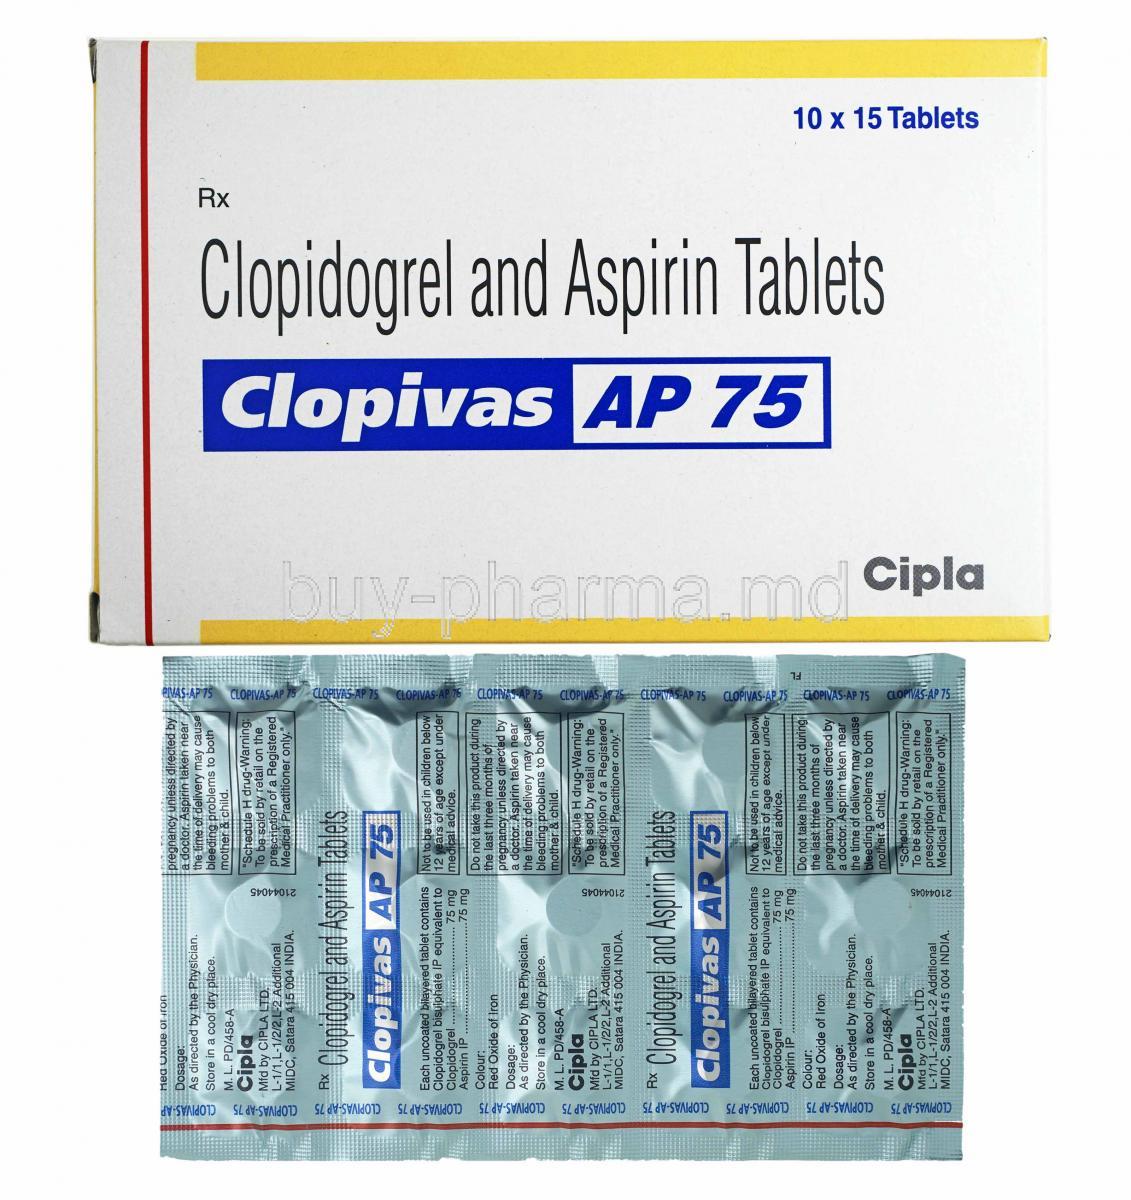 Clopivas AP, Aspirin 75mg and Clopidogrel 75mg box and tablets